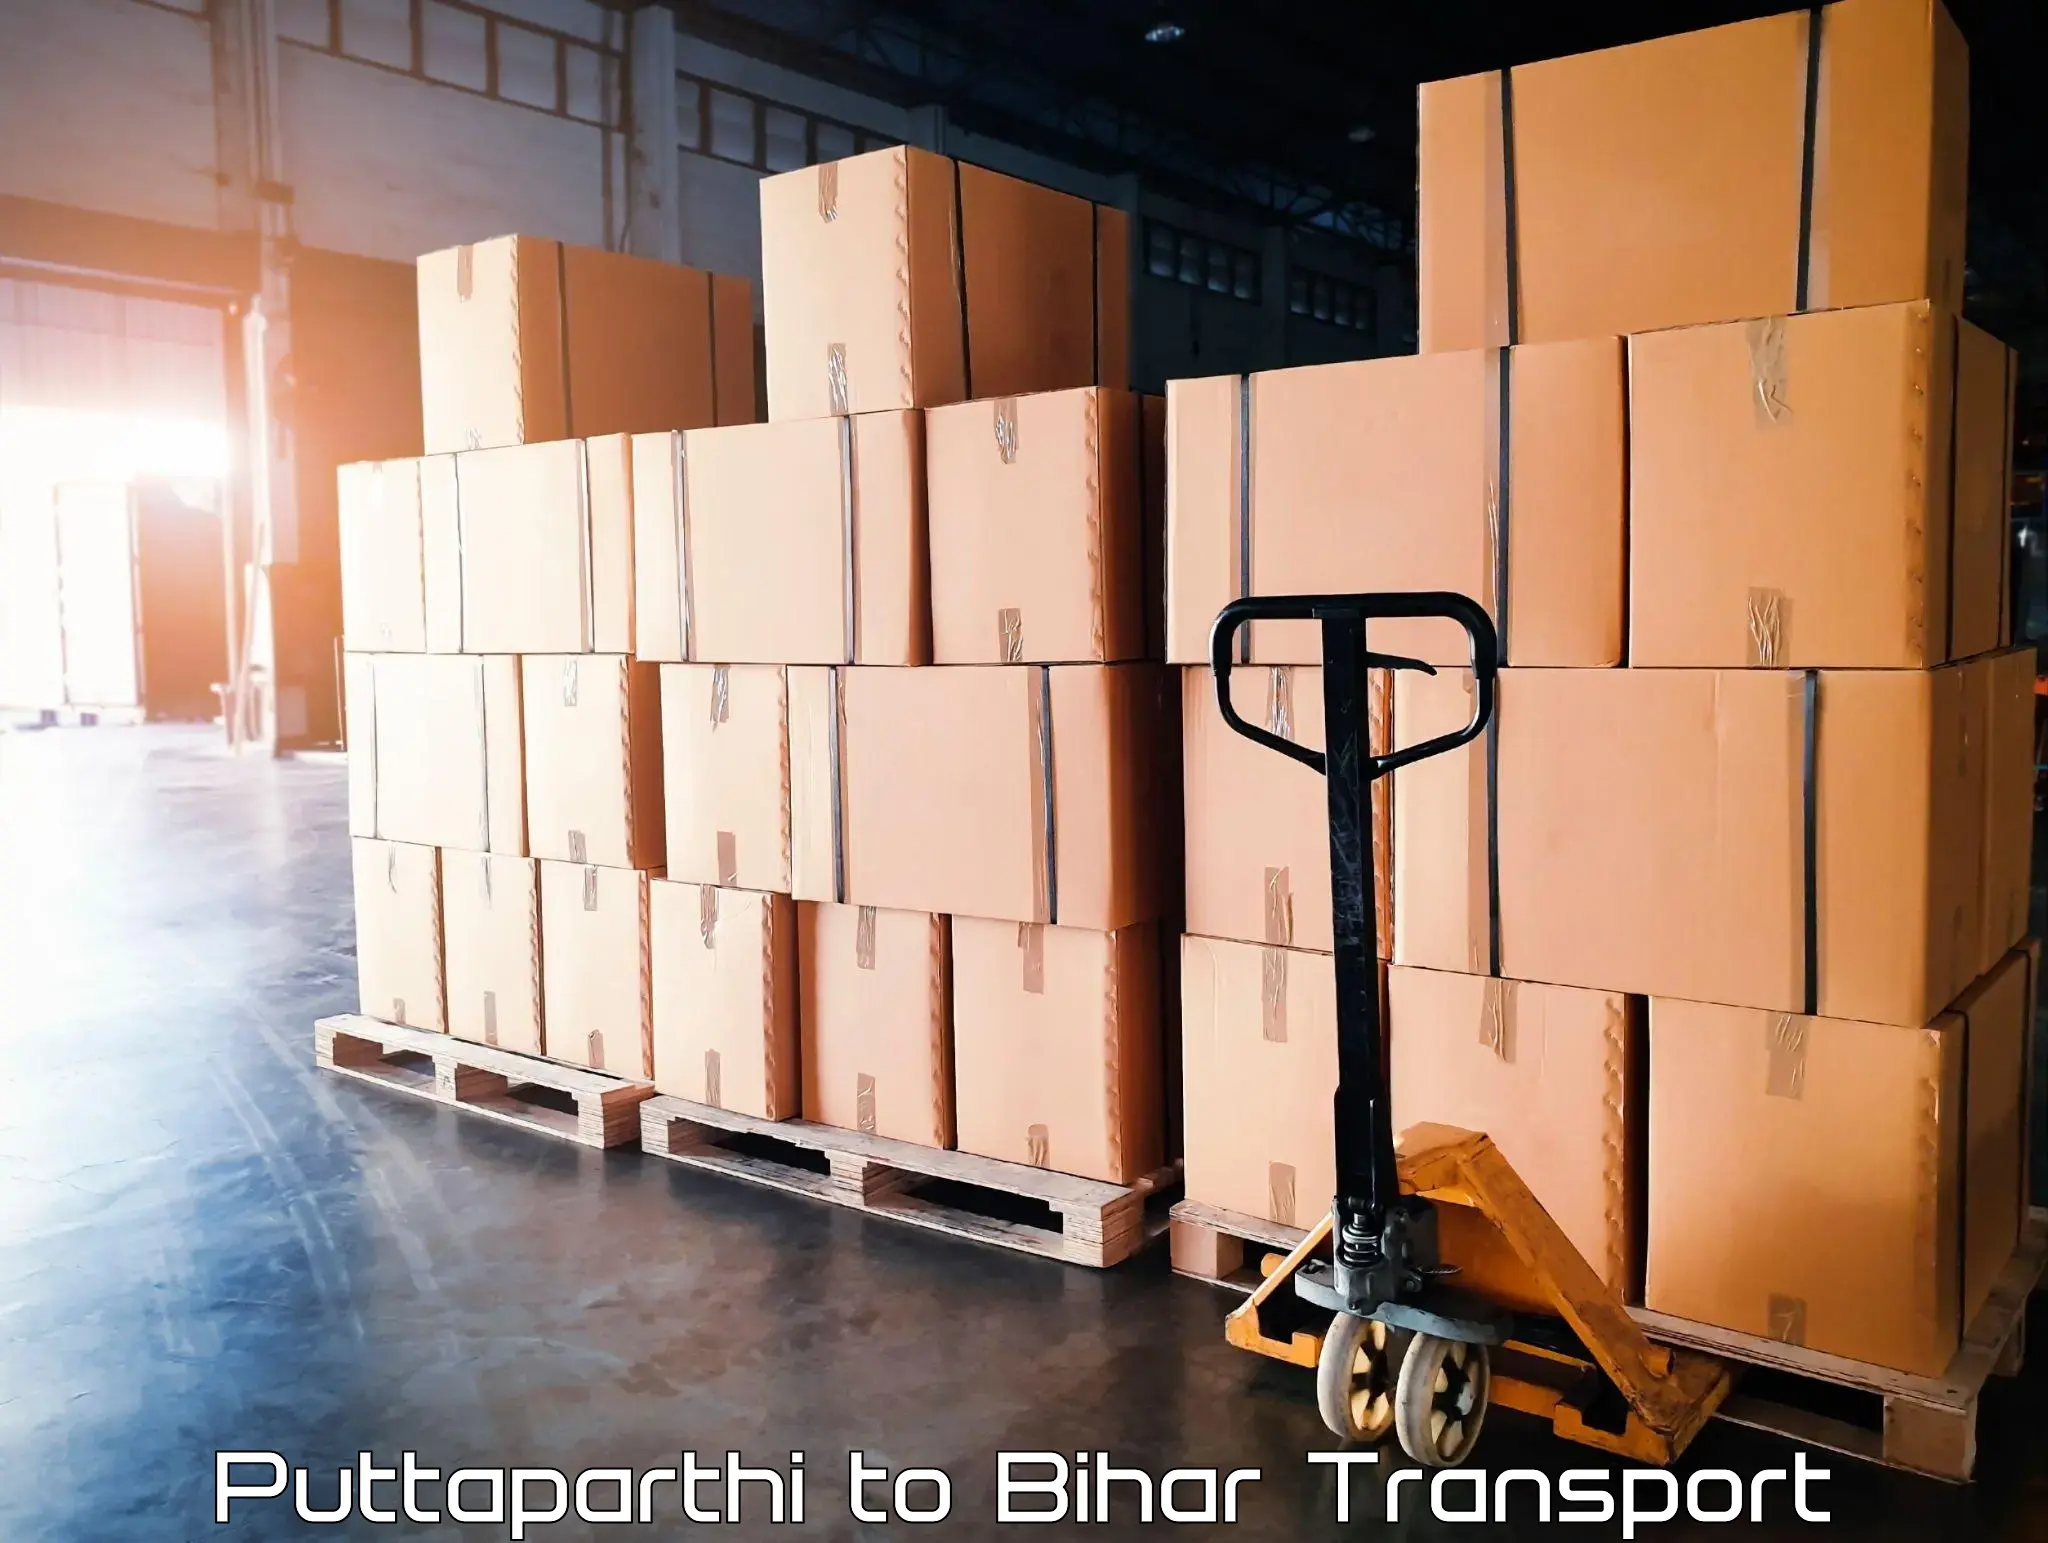 Transport in sharing Puttaparthi to Sultanganj